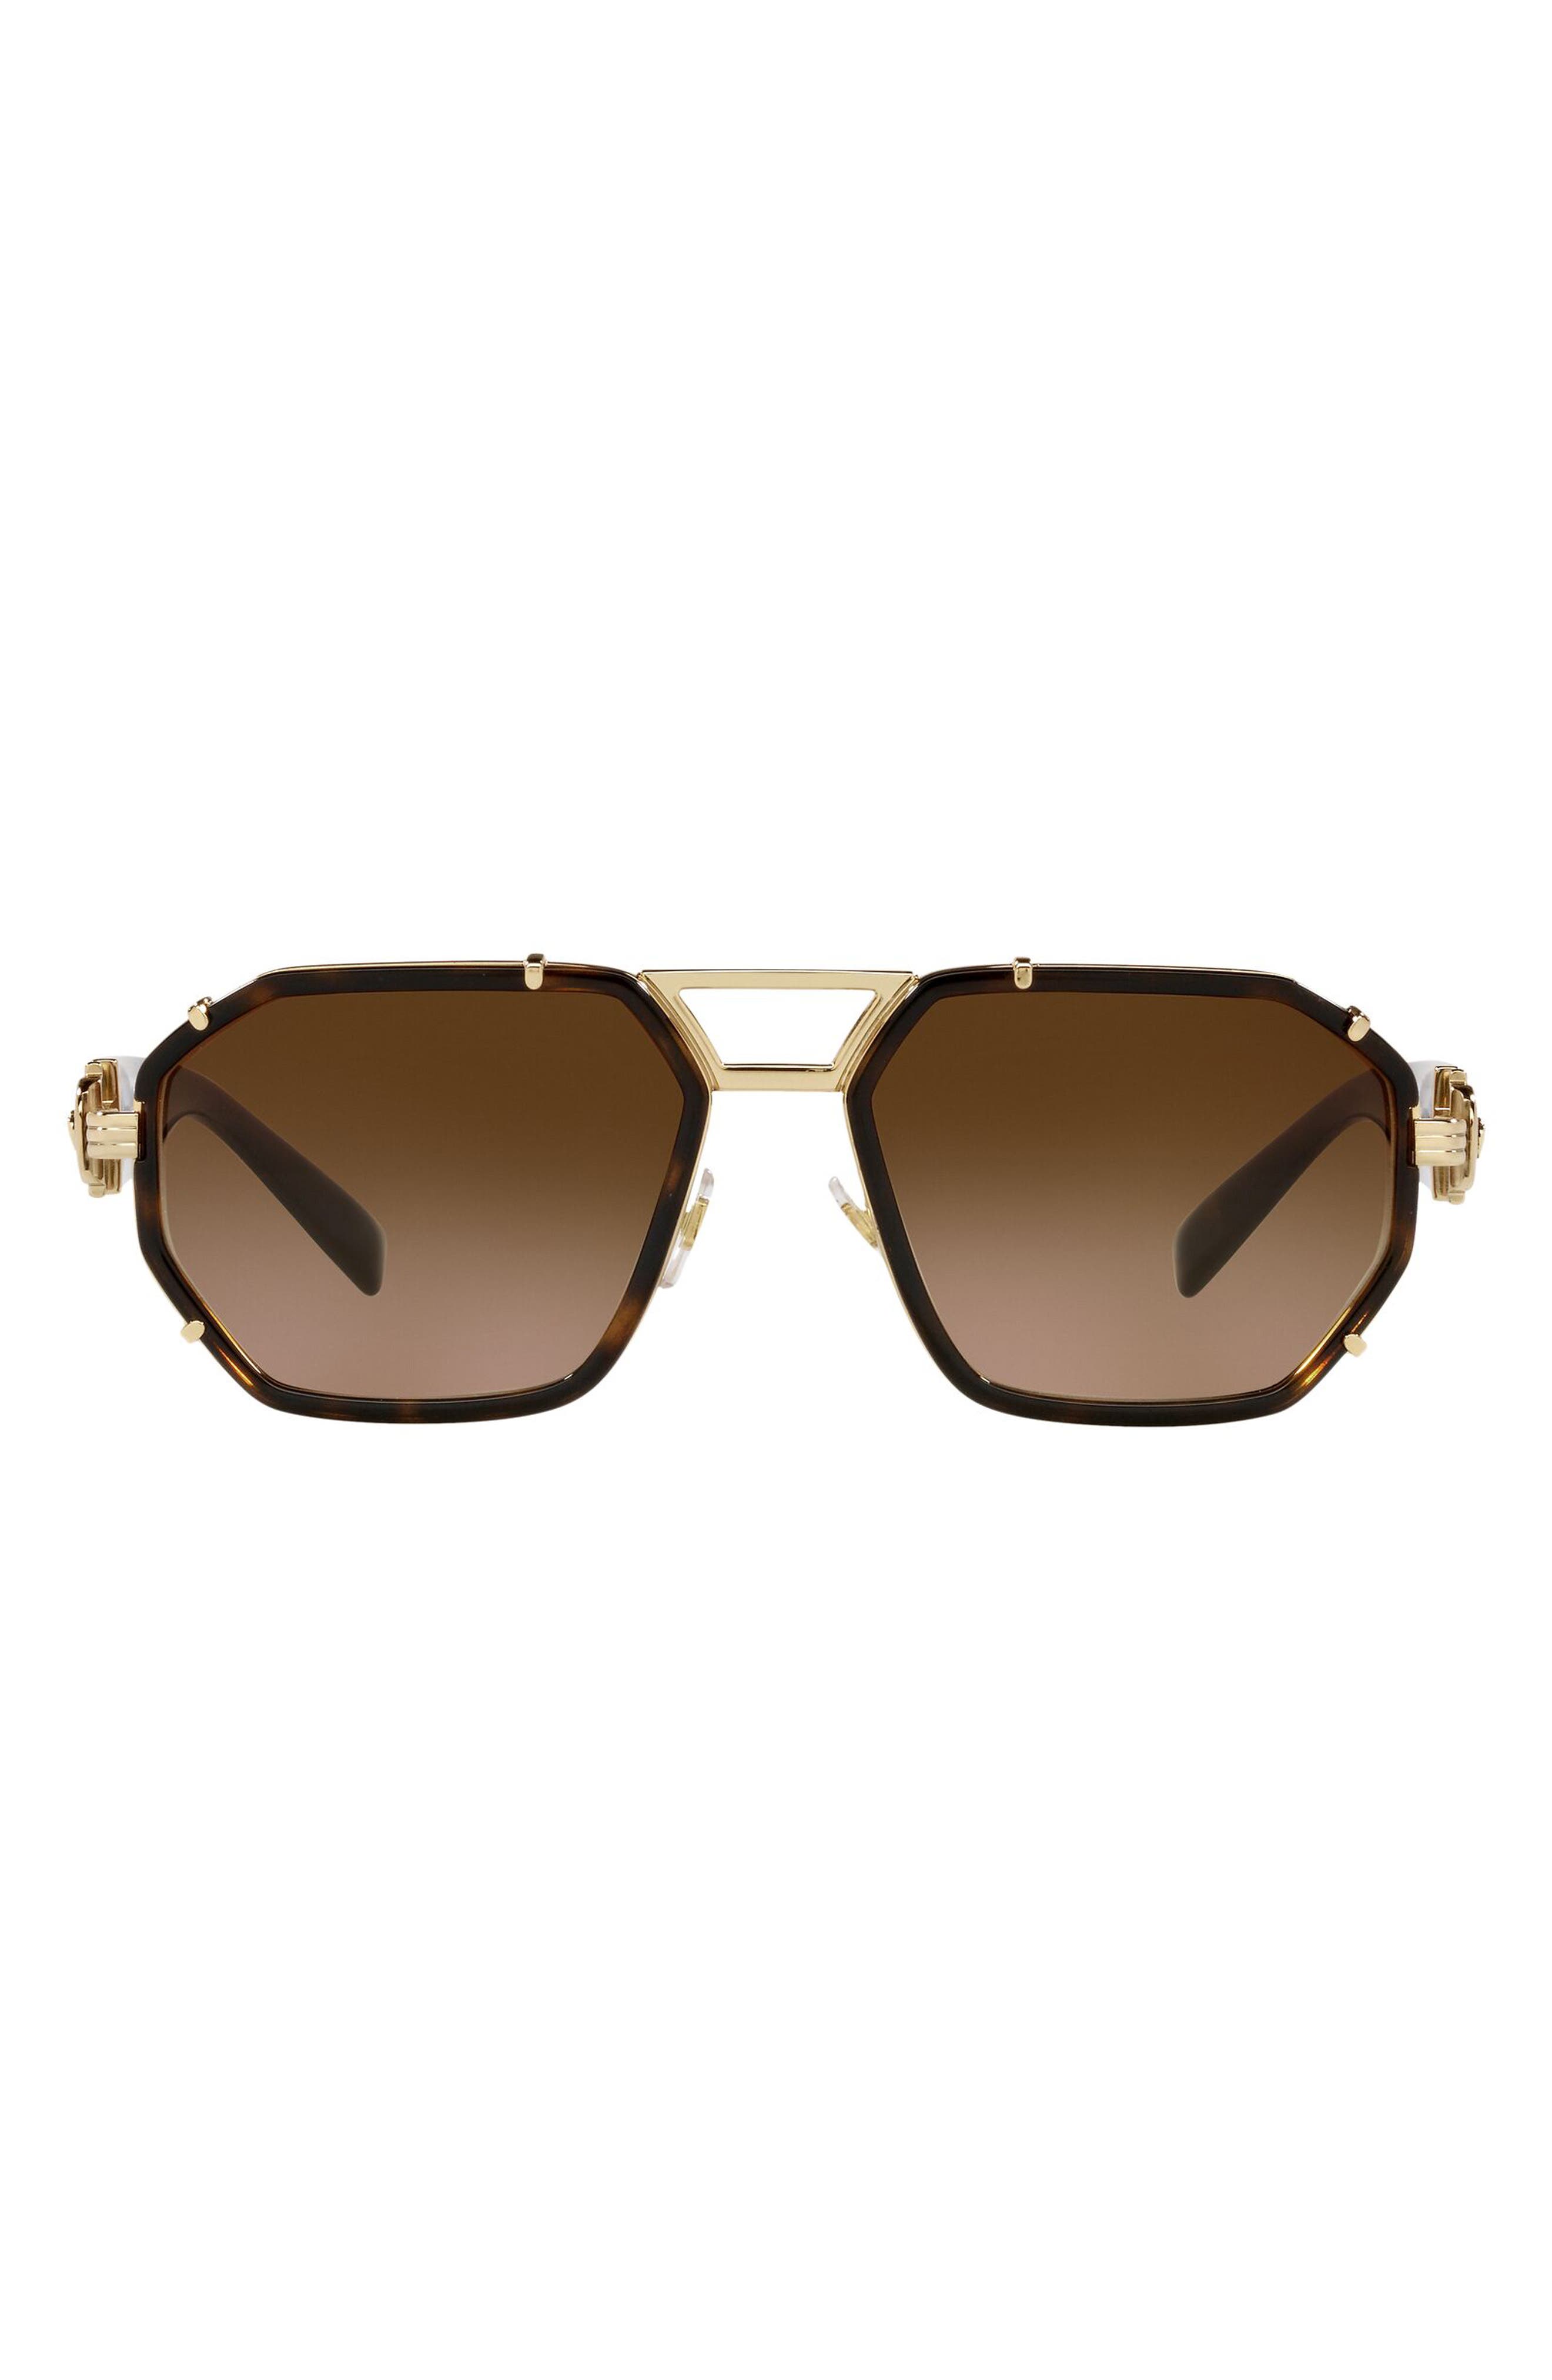 Versace 58mm Aviator Sunglasses in Havana/Brown Gradient at Nordstrom